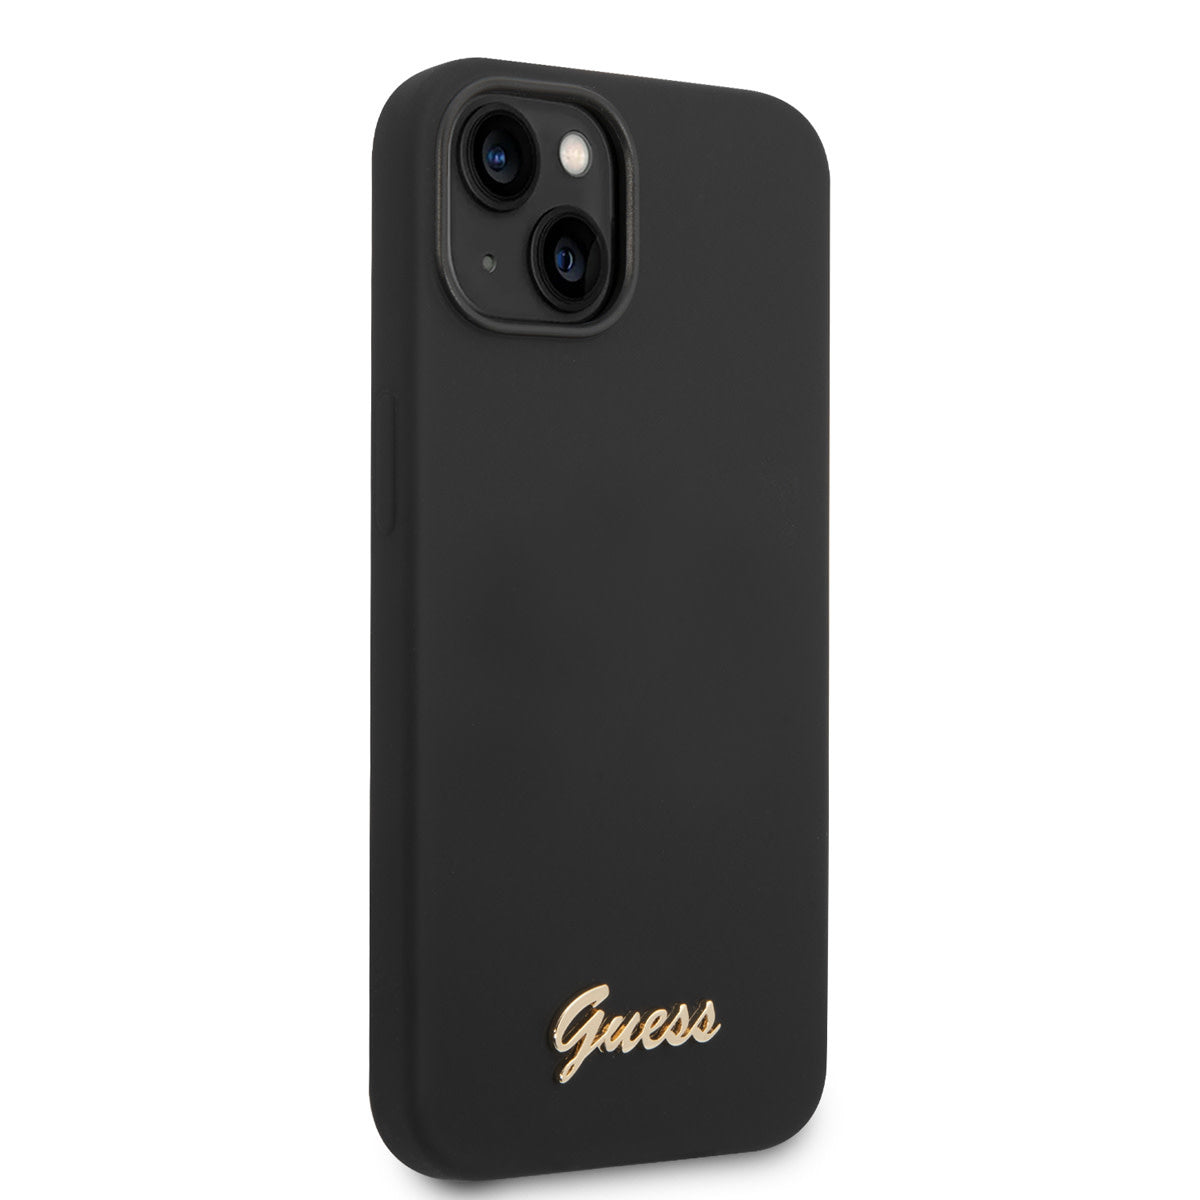 Guess iPhone 14 Backcover - Gold Logo - Zwart